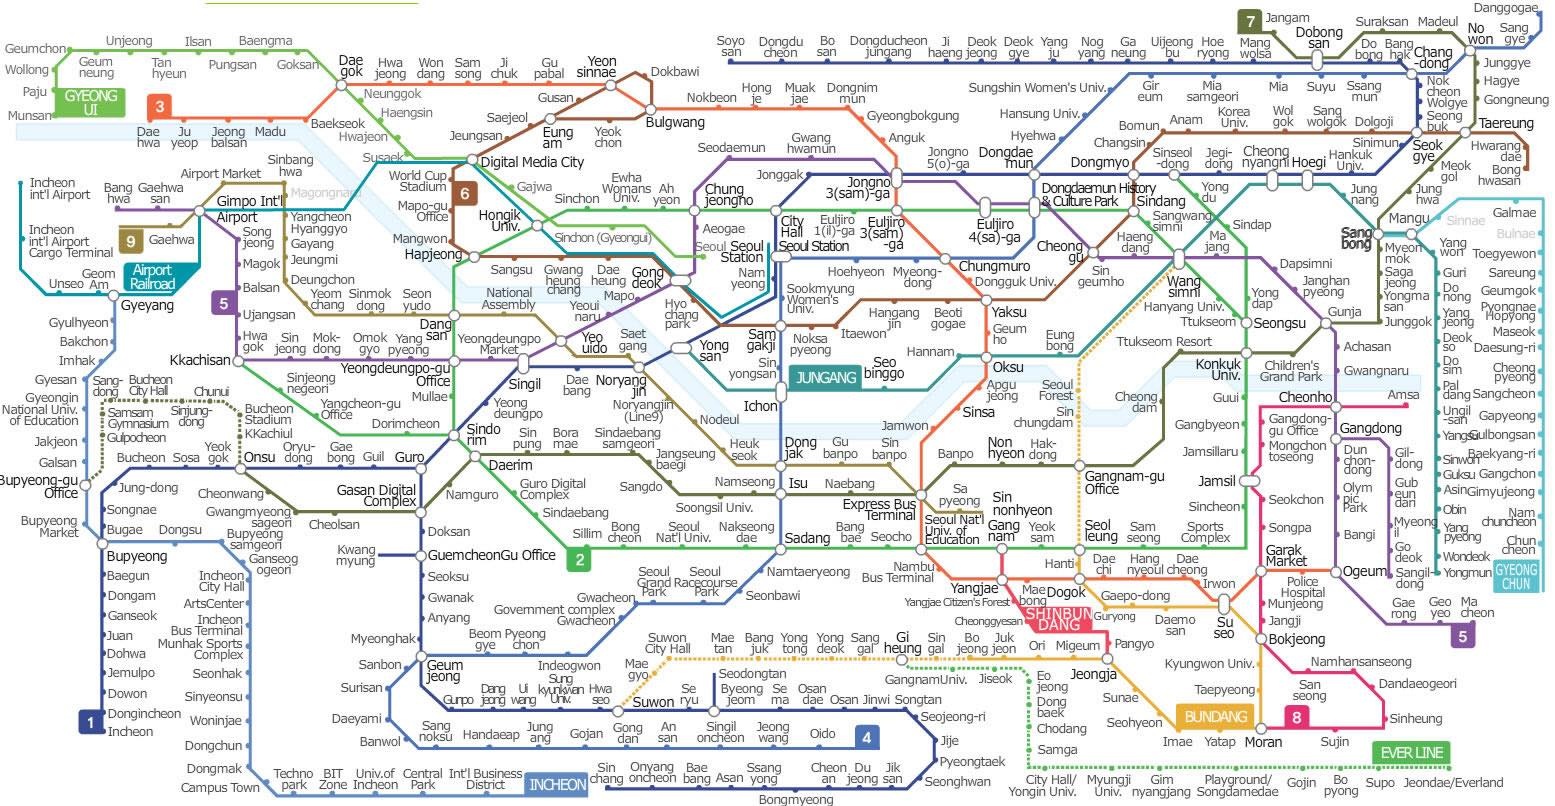 Sử dụng tàu điện ngầm Subway Hàn Quốc 2024
Bạn là tín đồ của tàu điện ngầm Subway Hàn Quốc? Đừng bỏ qua cơ hội sử dụng dịch vụ tàu điện ngầm Subway Hàn Quốc 2024 với nhiều tính năng mới mẻ. Không chỉ là phương tiện di chuyển, tàu điện ngầm còn là một phần không thể thiếu trong chuyến du lịch của bạn.